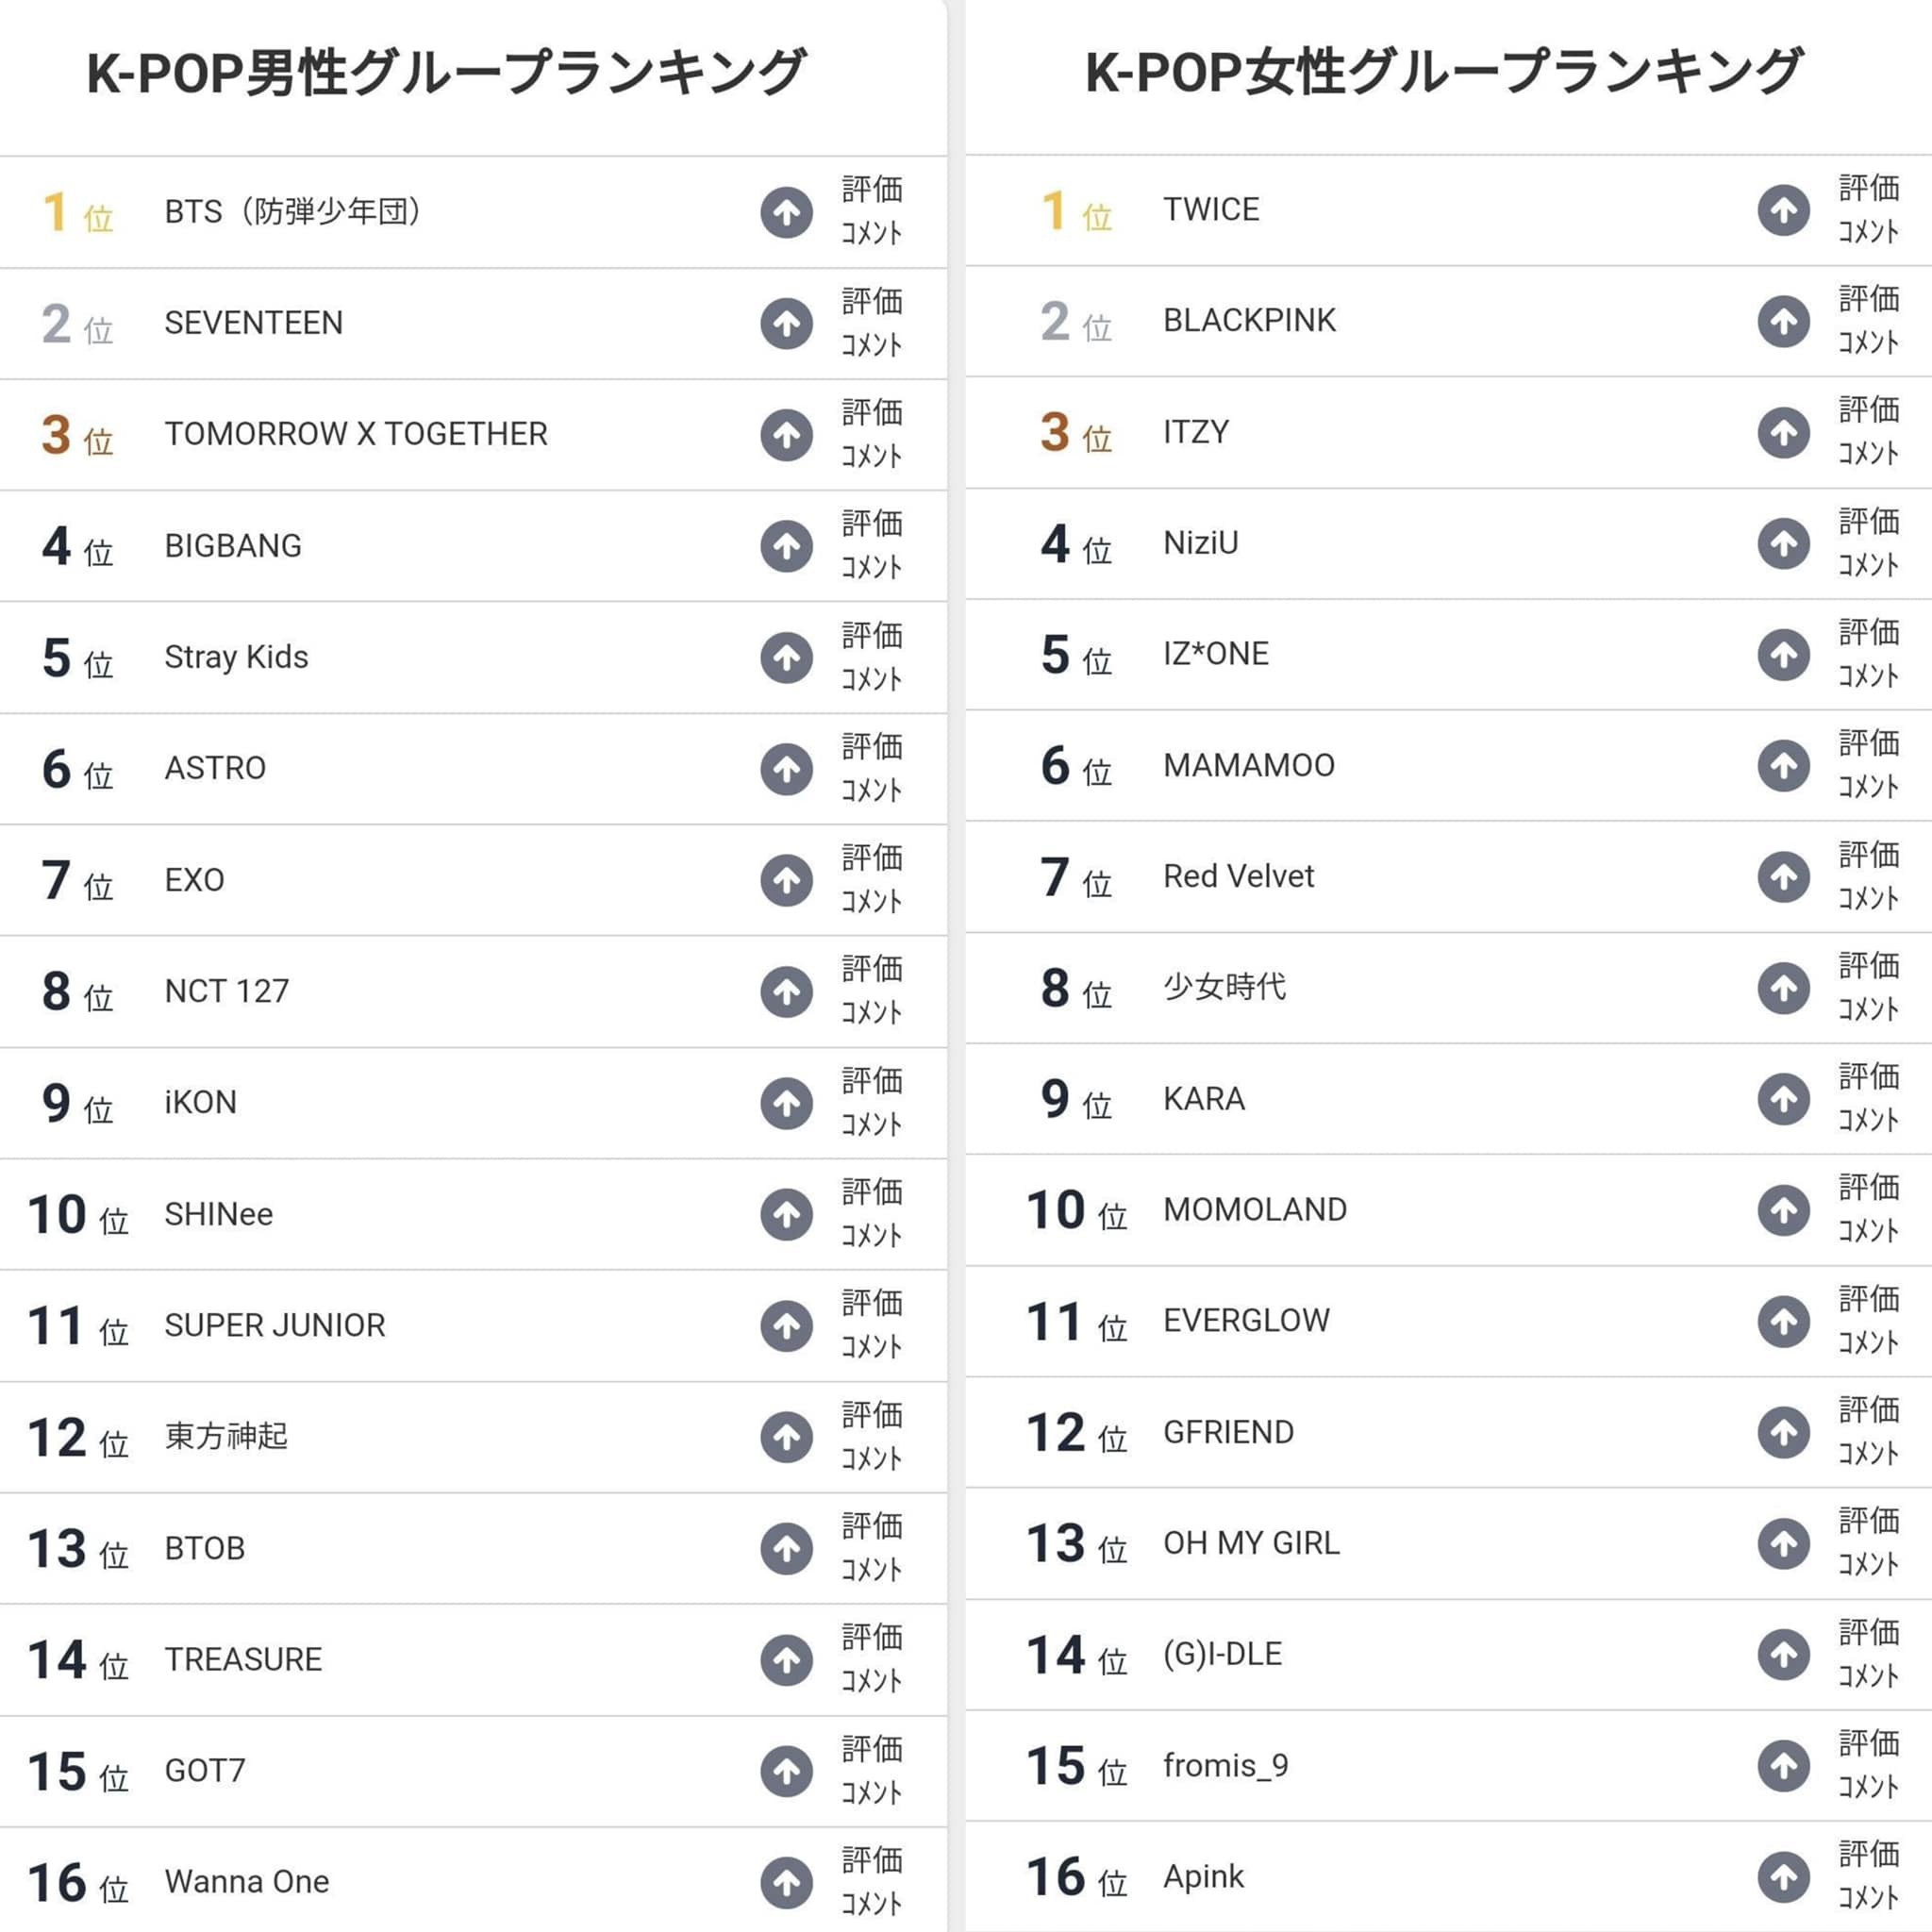 Bảng xếp hạng nhóm nhạc Kpop nổi tiếng nhất tại Nhật Bản nửa đầu năm 2021